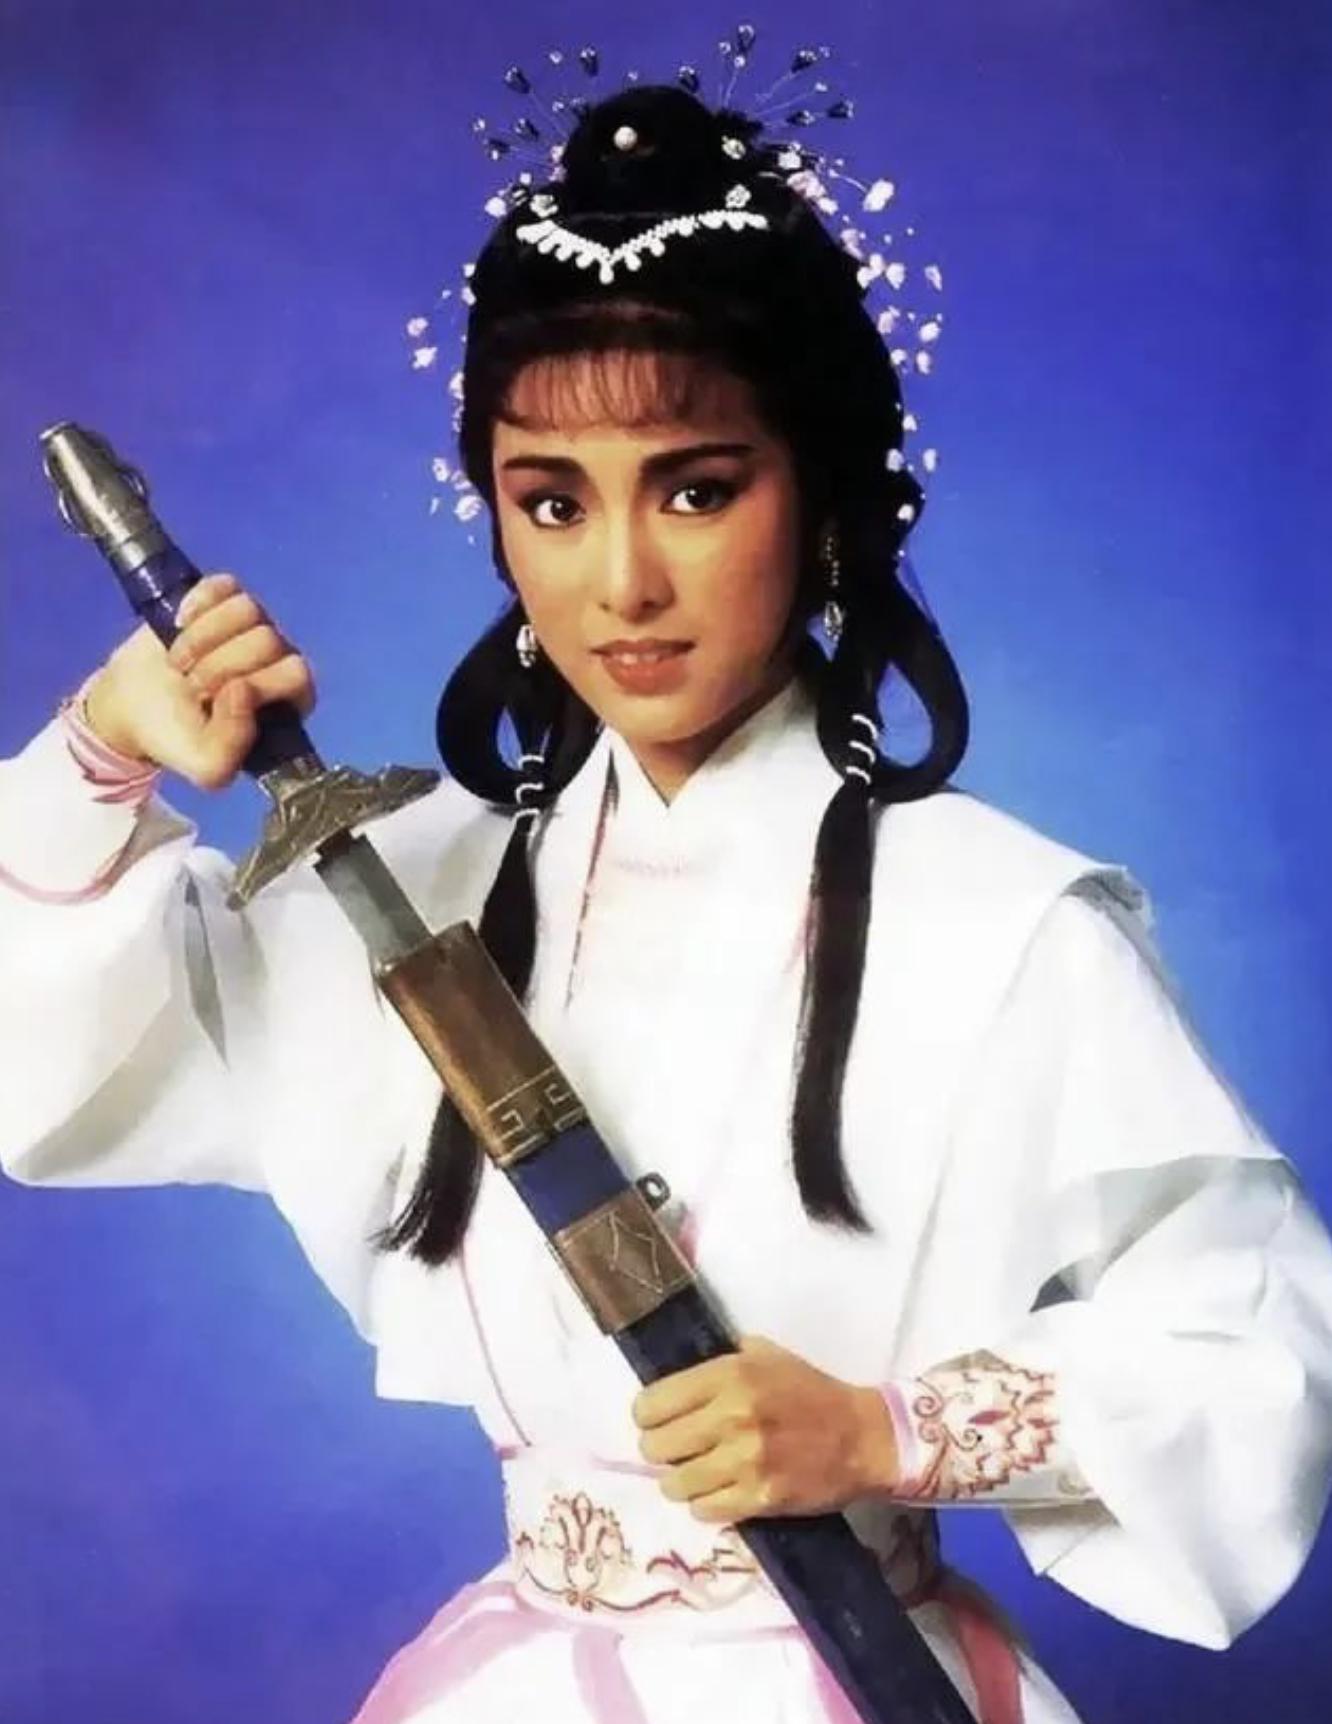 米雪,被誉为冻龄女神,在演艺圈的巅峰时期曾与赵雅芝平分秋色